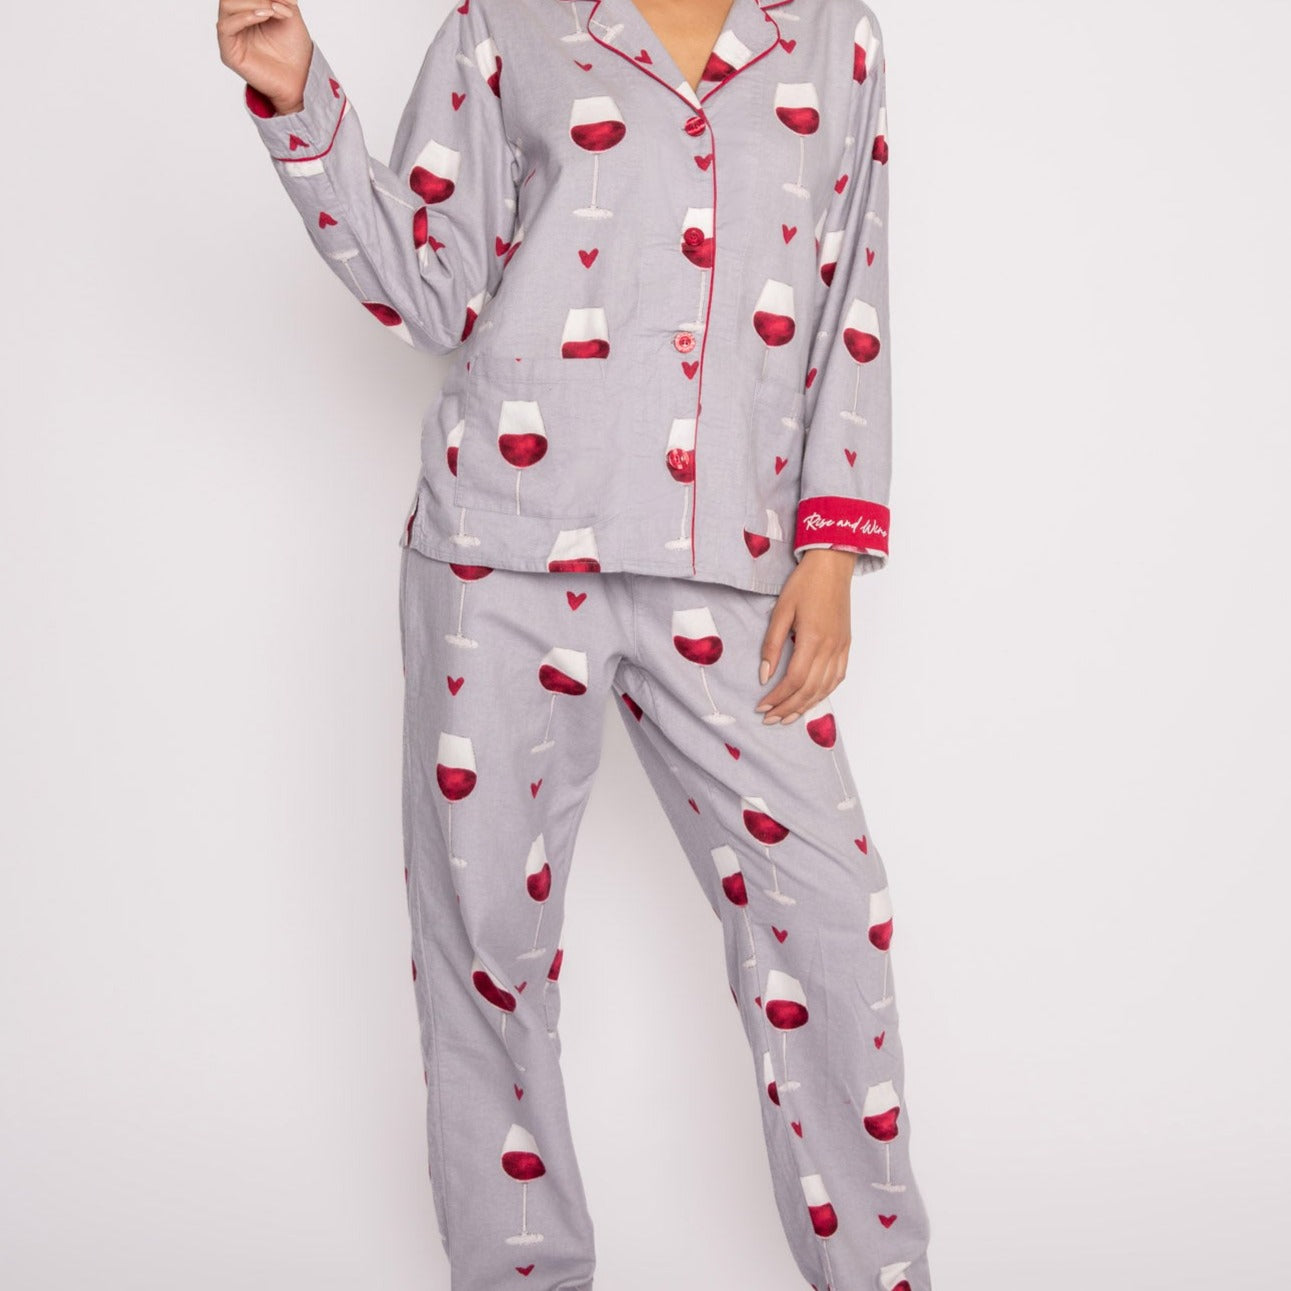 Flannel Pajama Sets - RKFLPJ Sleep & Lounge - Sleep - Pajamas P.J. Salvage   